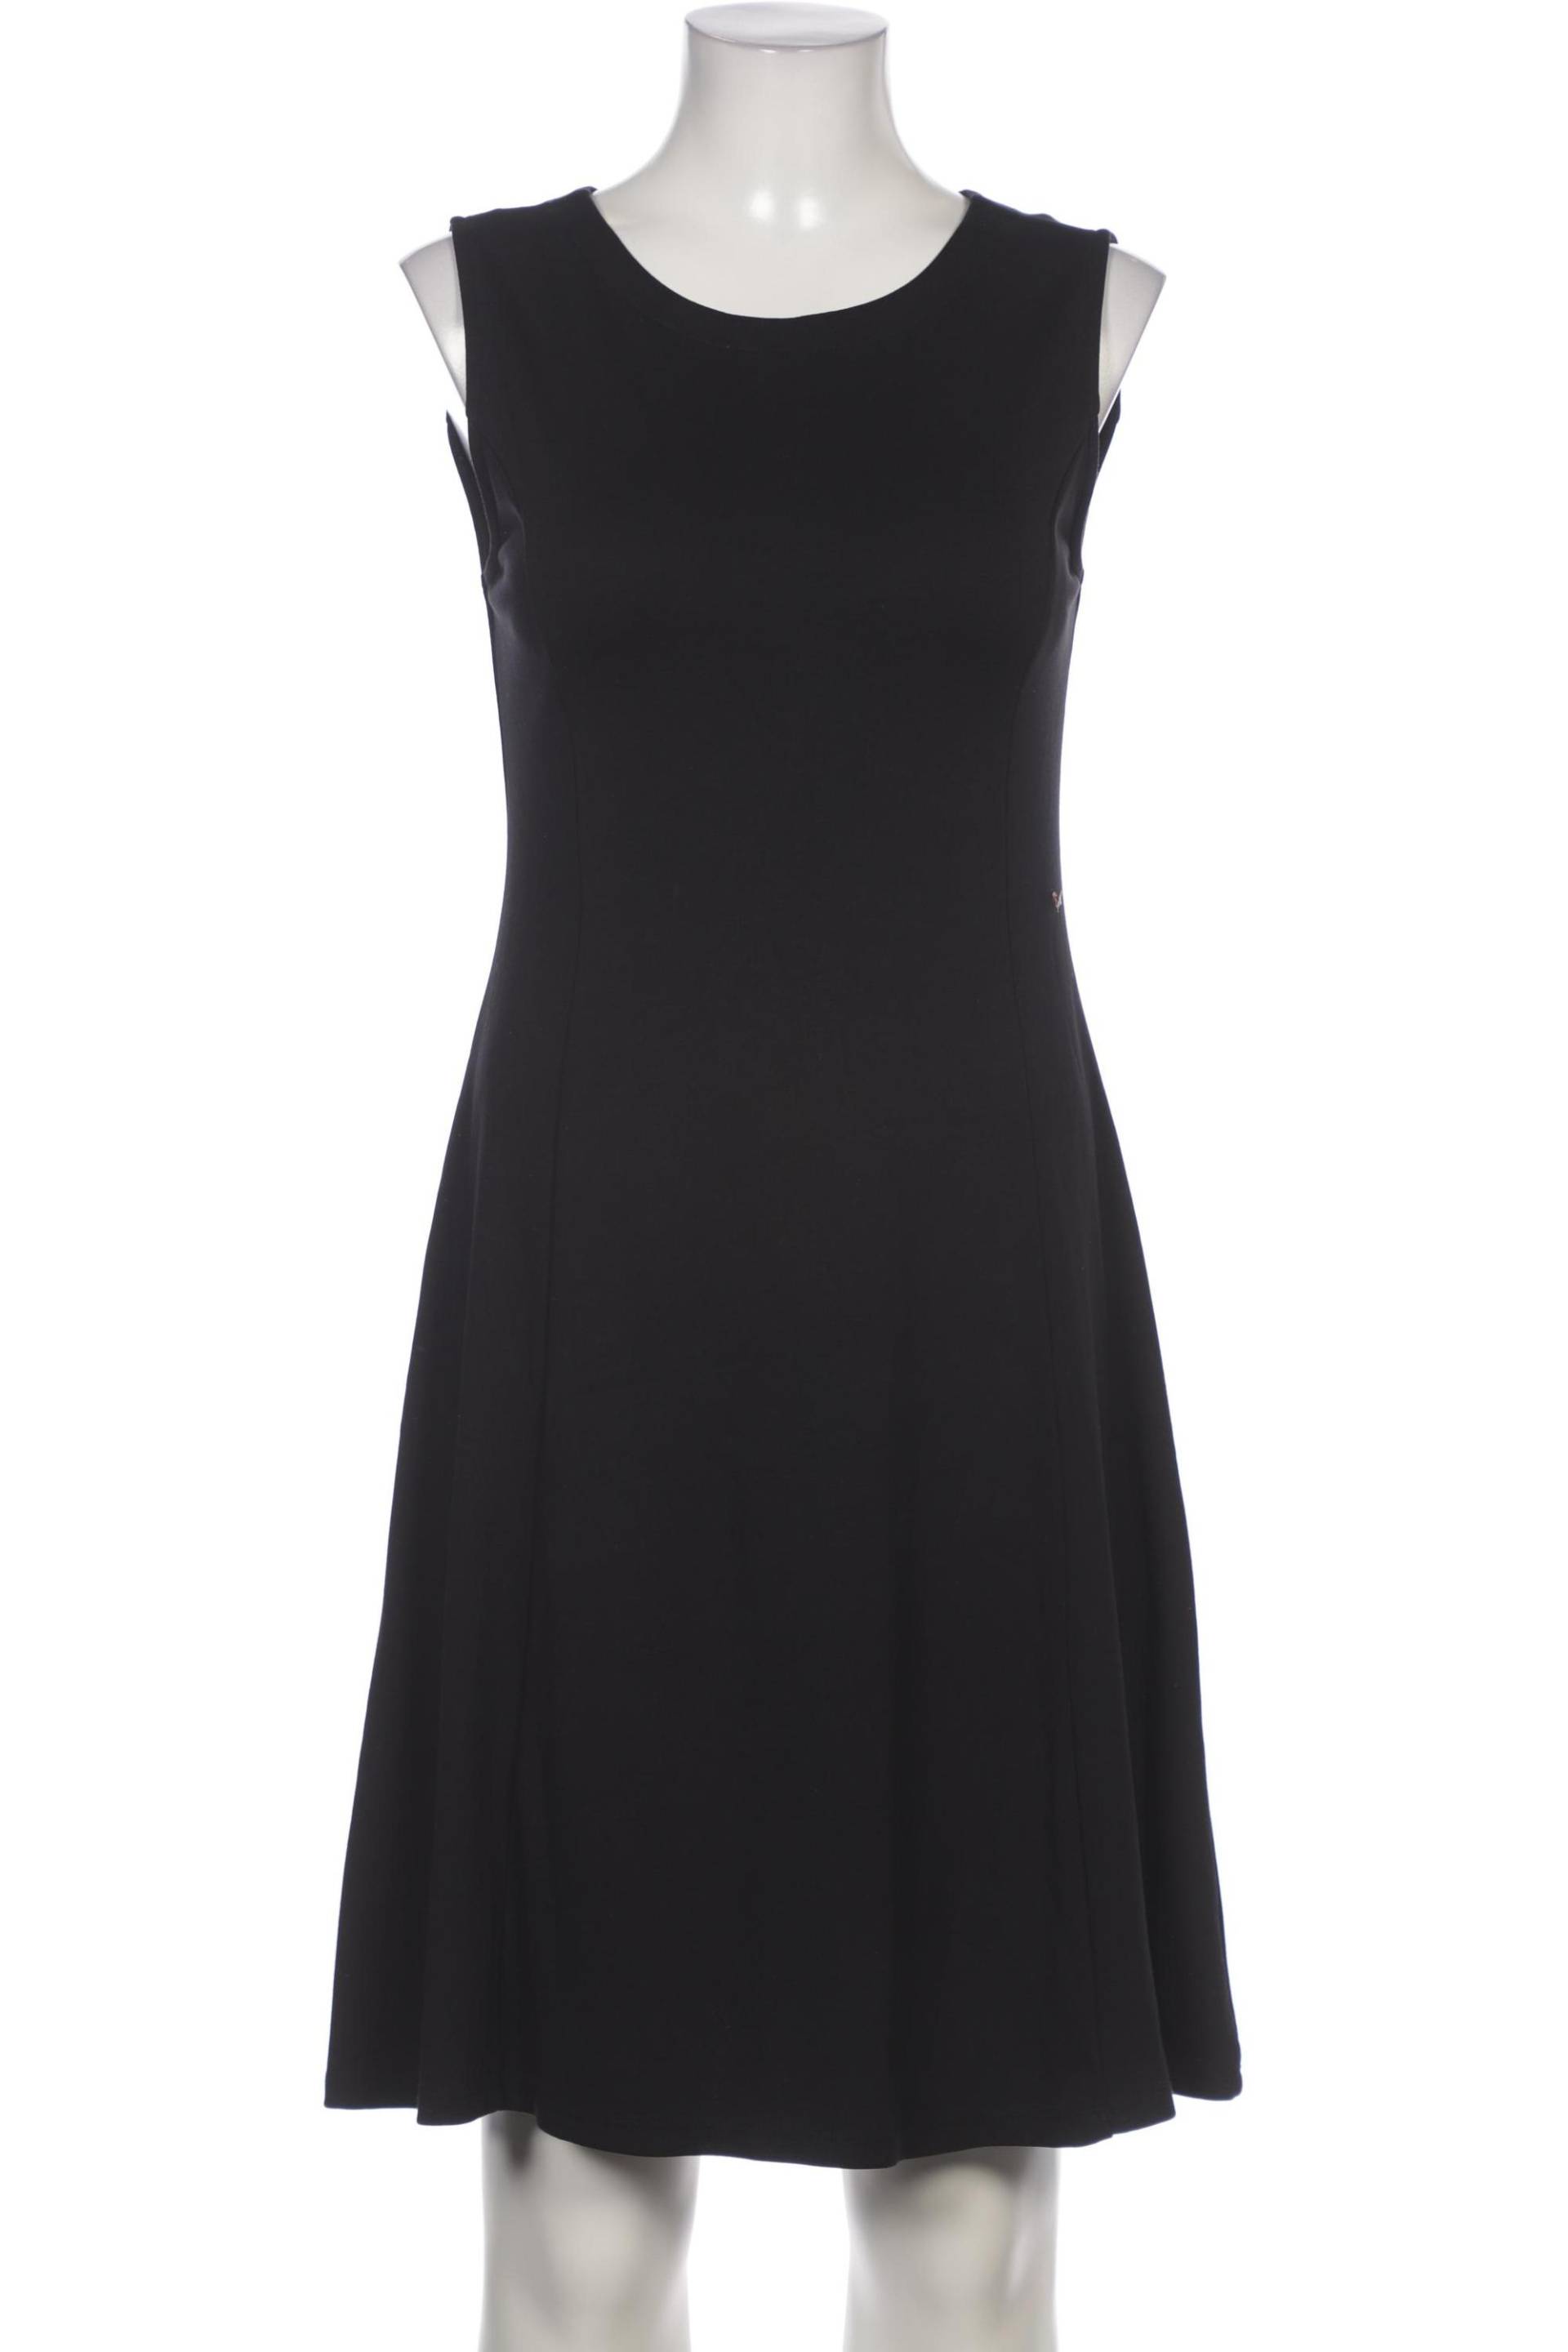 Opus Damen Kleid, schwarz von Opus